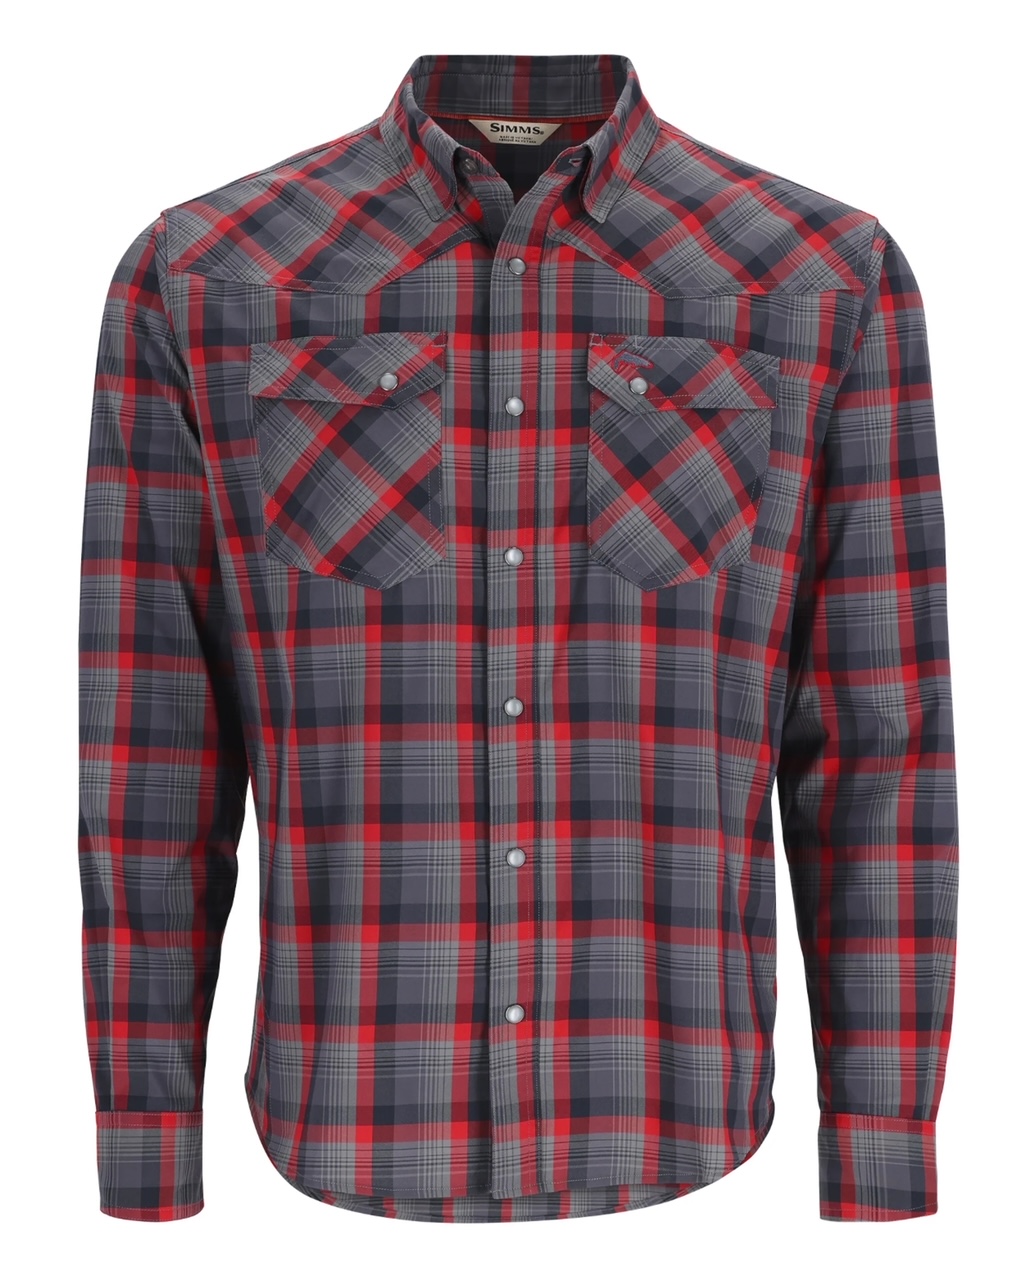 Simms M's Brackett LS Shirt - Auburn Red/Black Window Plaid - Medium